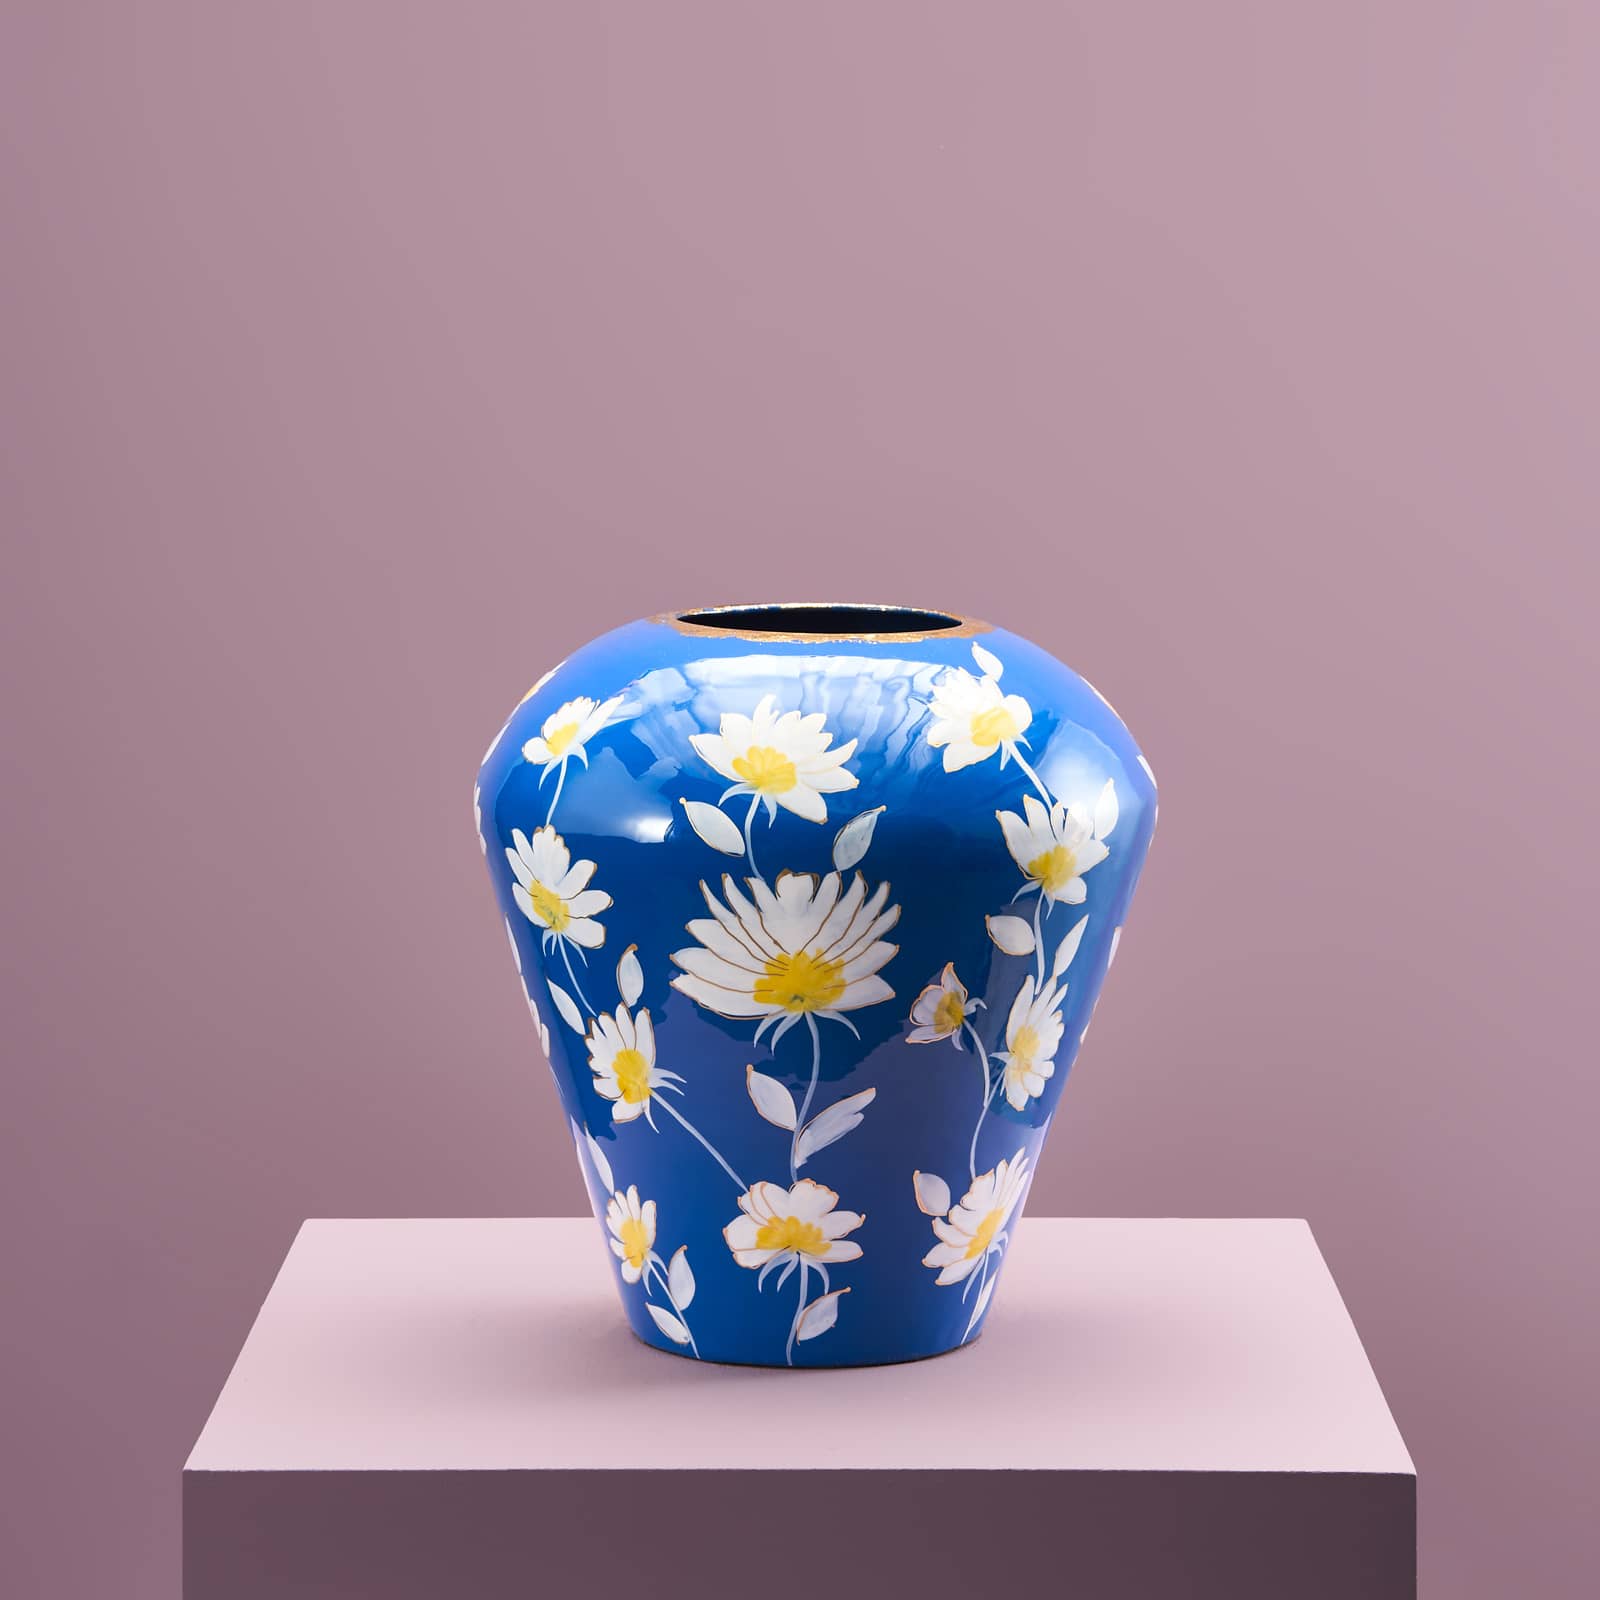 Vase Margarita M, blue